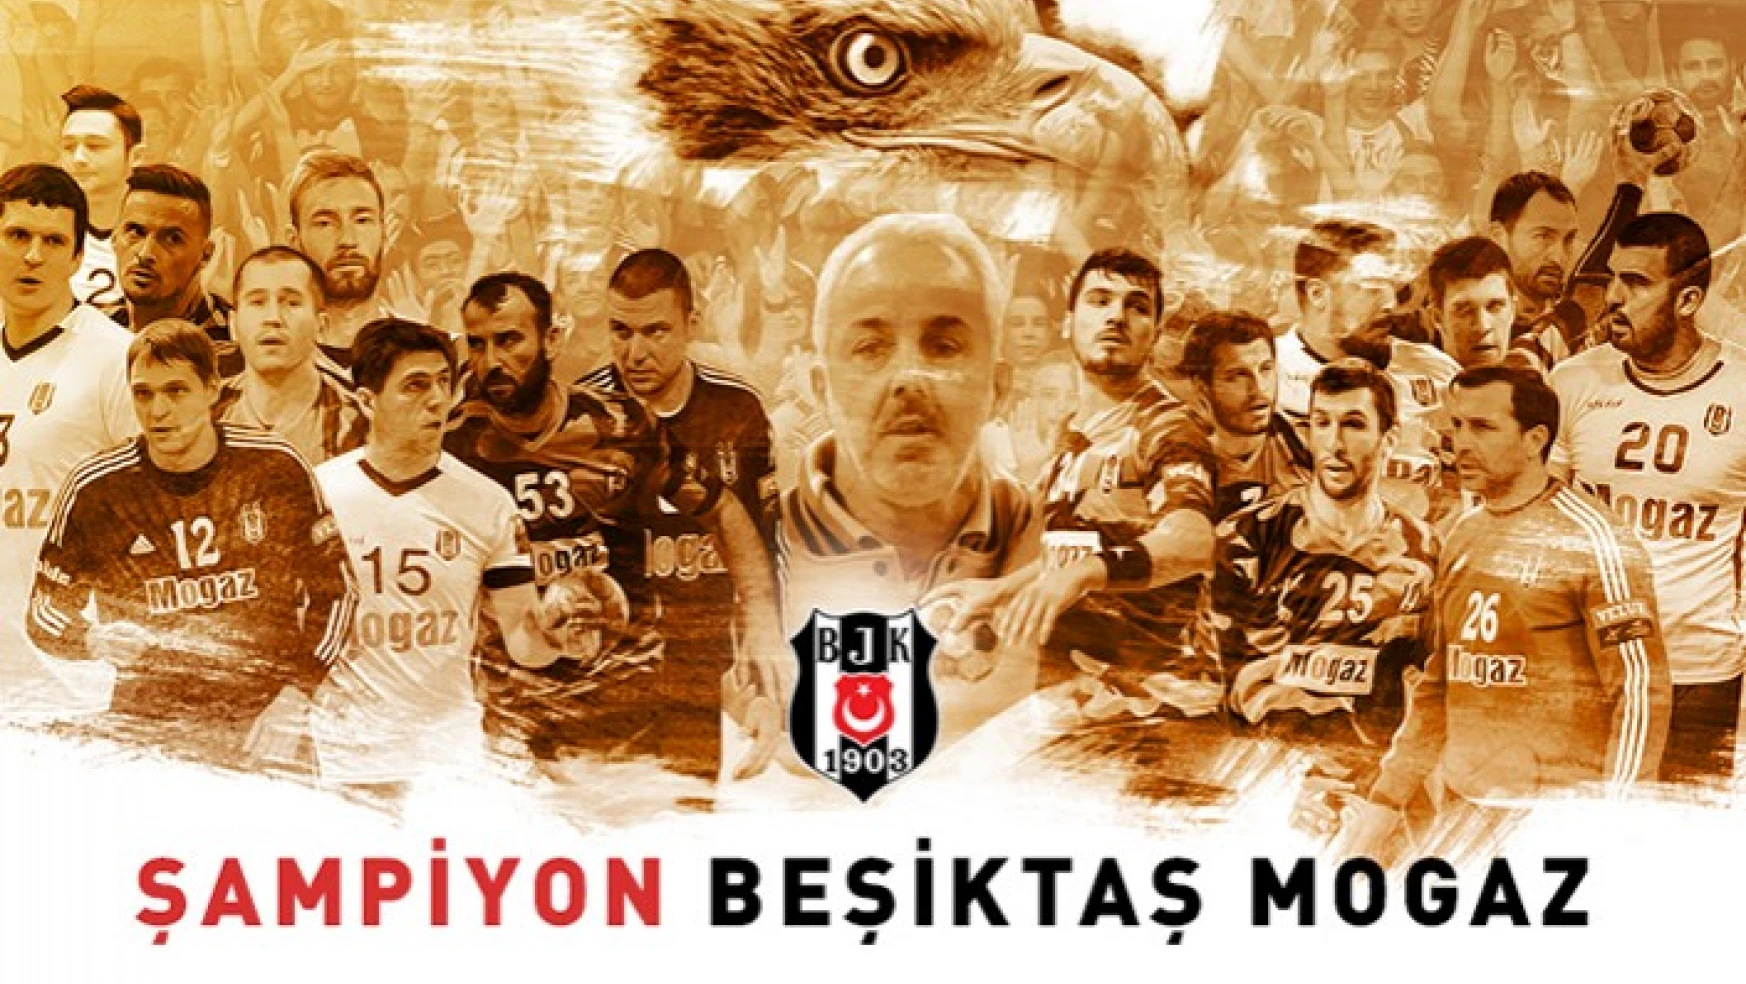 Beşiktaş Mogaz ŞAMPİYON